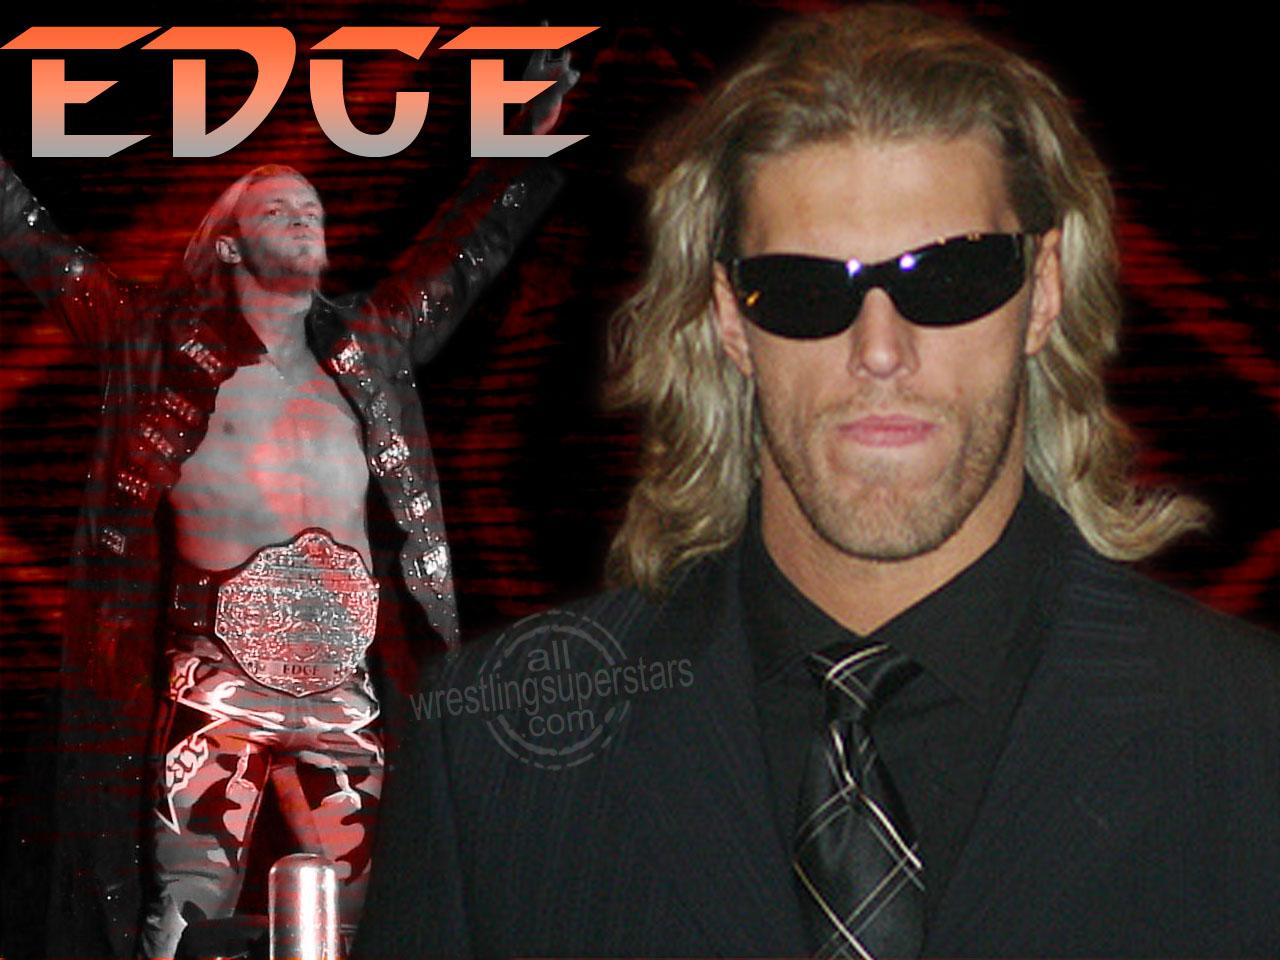 http://4.bp.blogspot.com/-KJO2Shm0Wbw/UNgCYndftrI/AAAAAAAACUY/aGQGz16gJzY/s1600/WWE-WALLPAPERS-EDGE-1.JPG